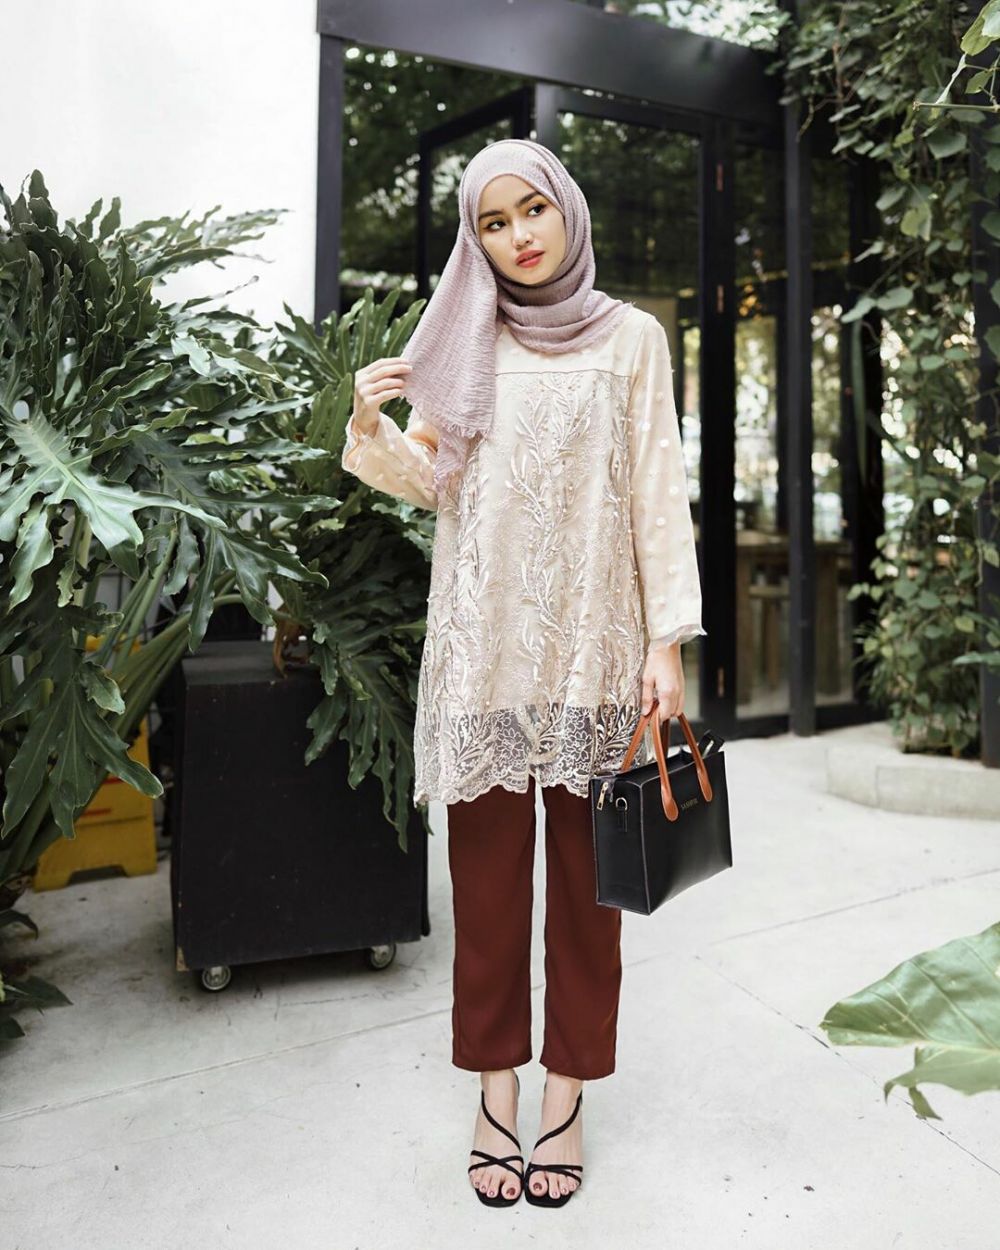 Ootd Kondangan  Hijab  Simple Celana Hijab  Casual